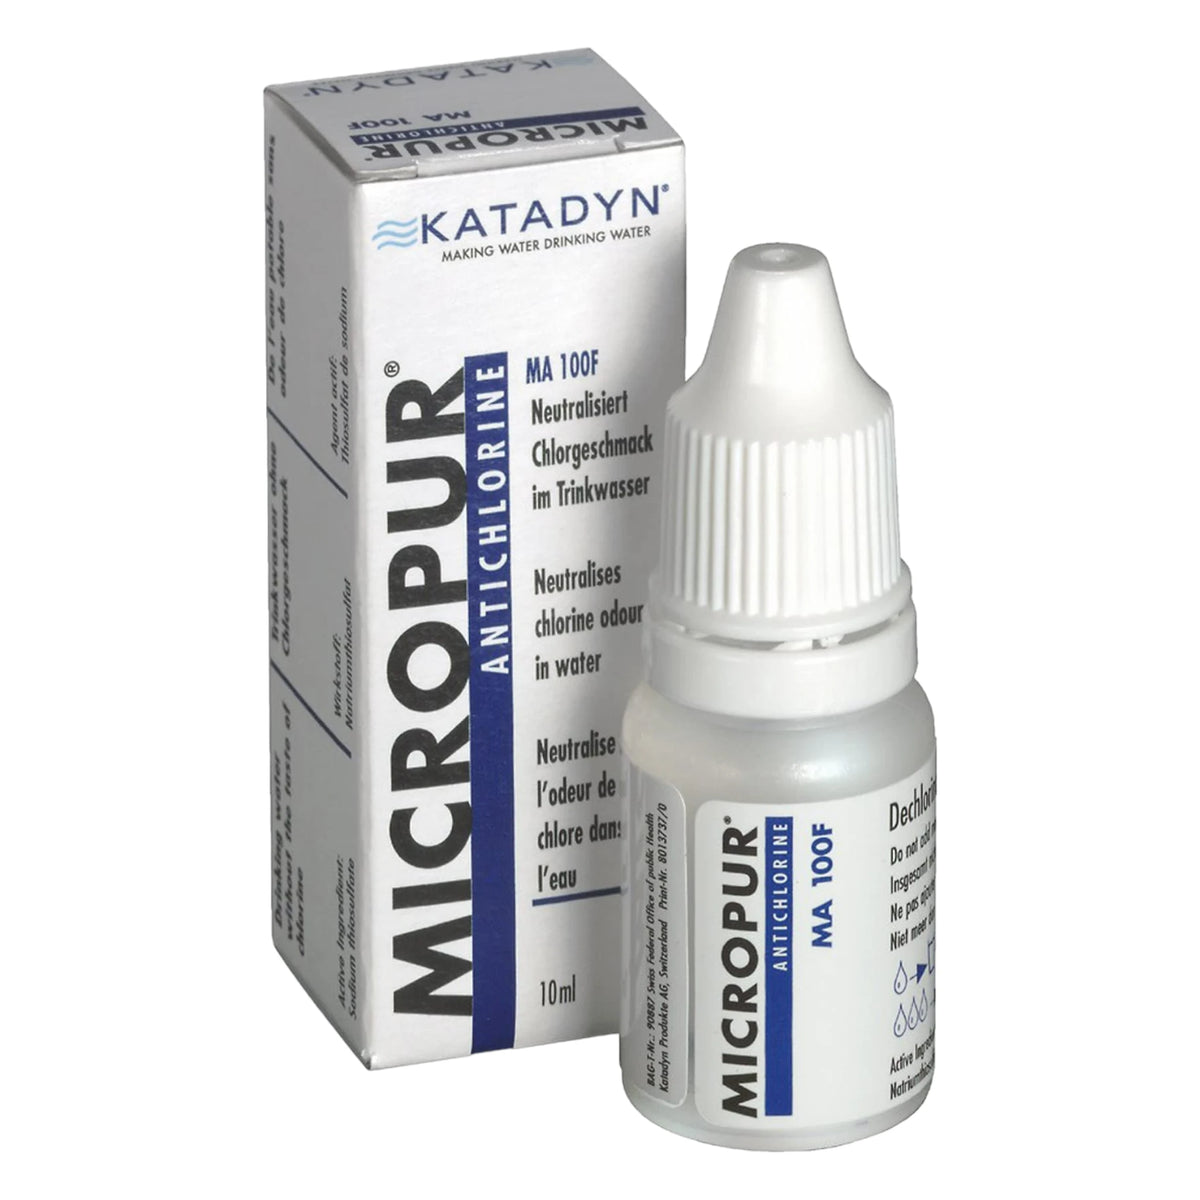 Katadyn Micropur Antichlor MA 100F